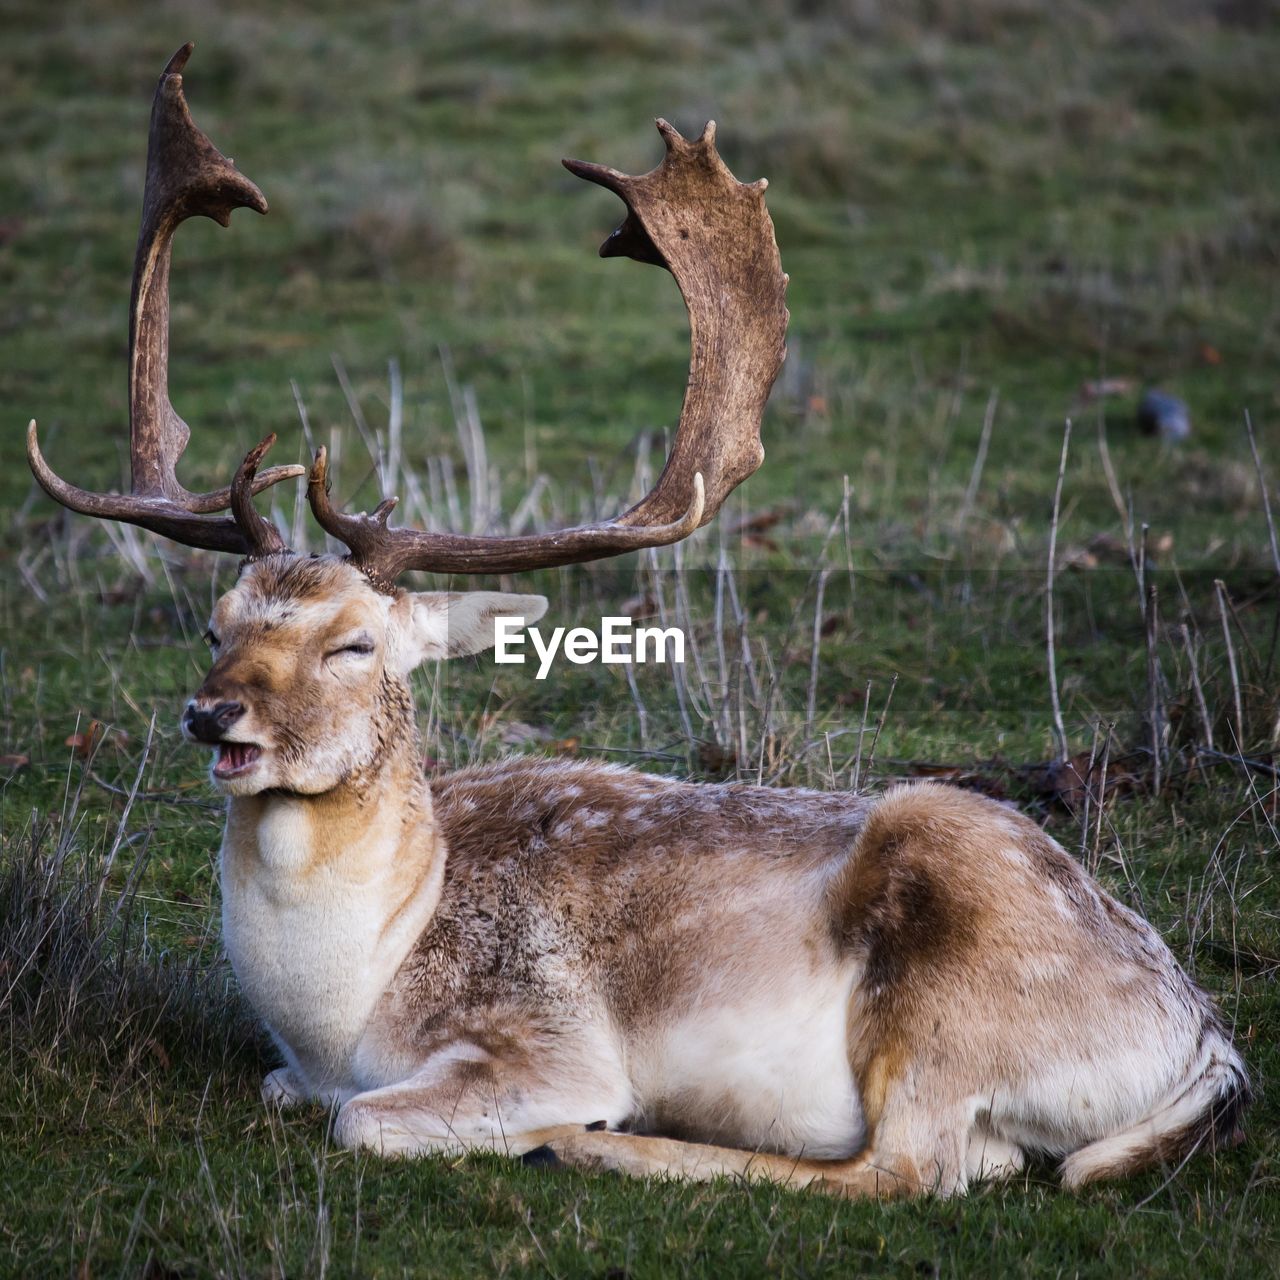 Deer resting in a field